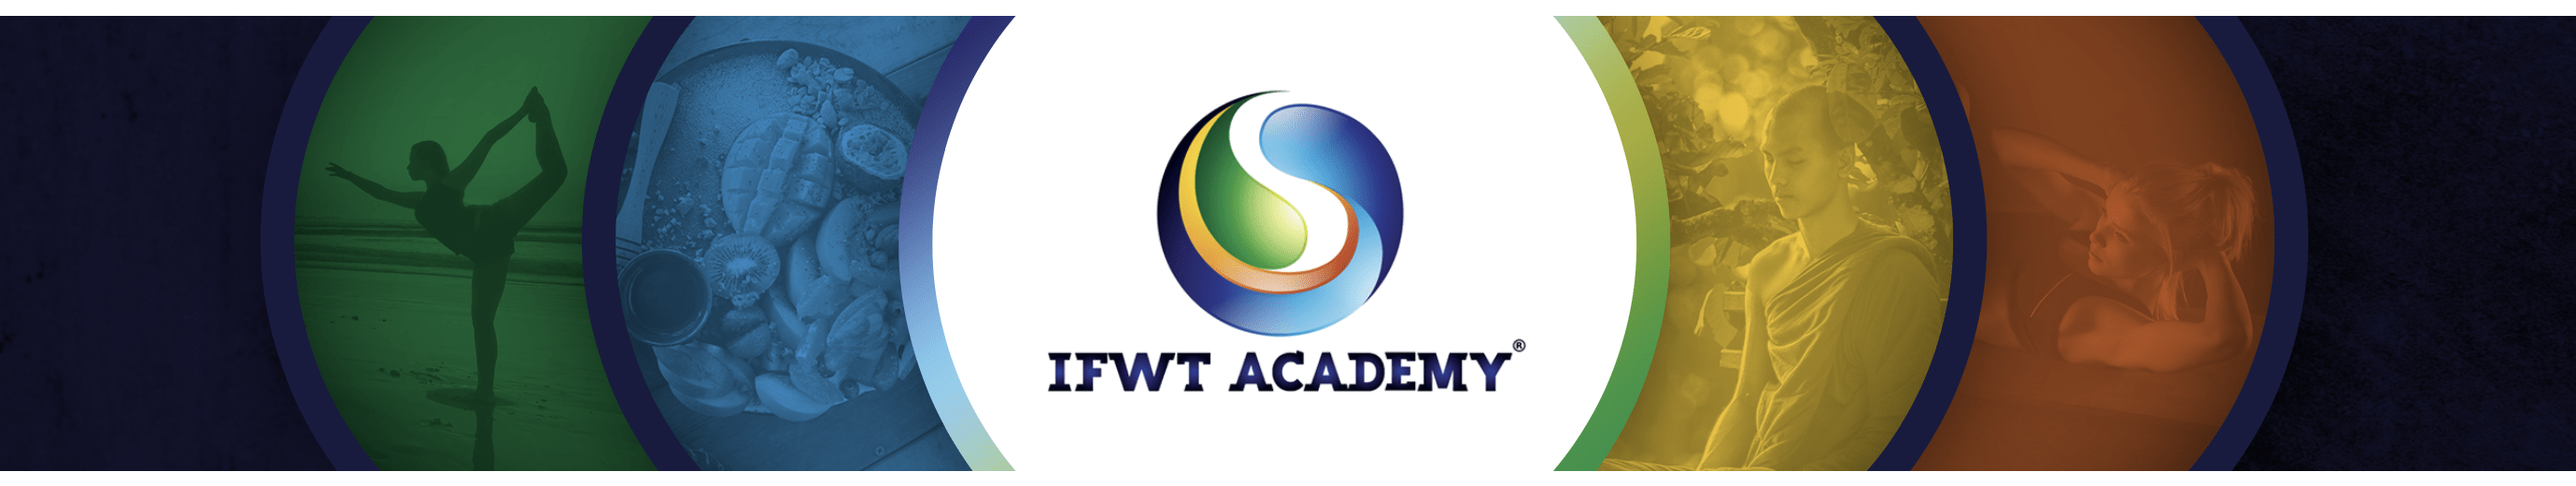 IFWT Academy